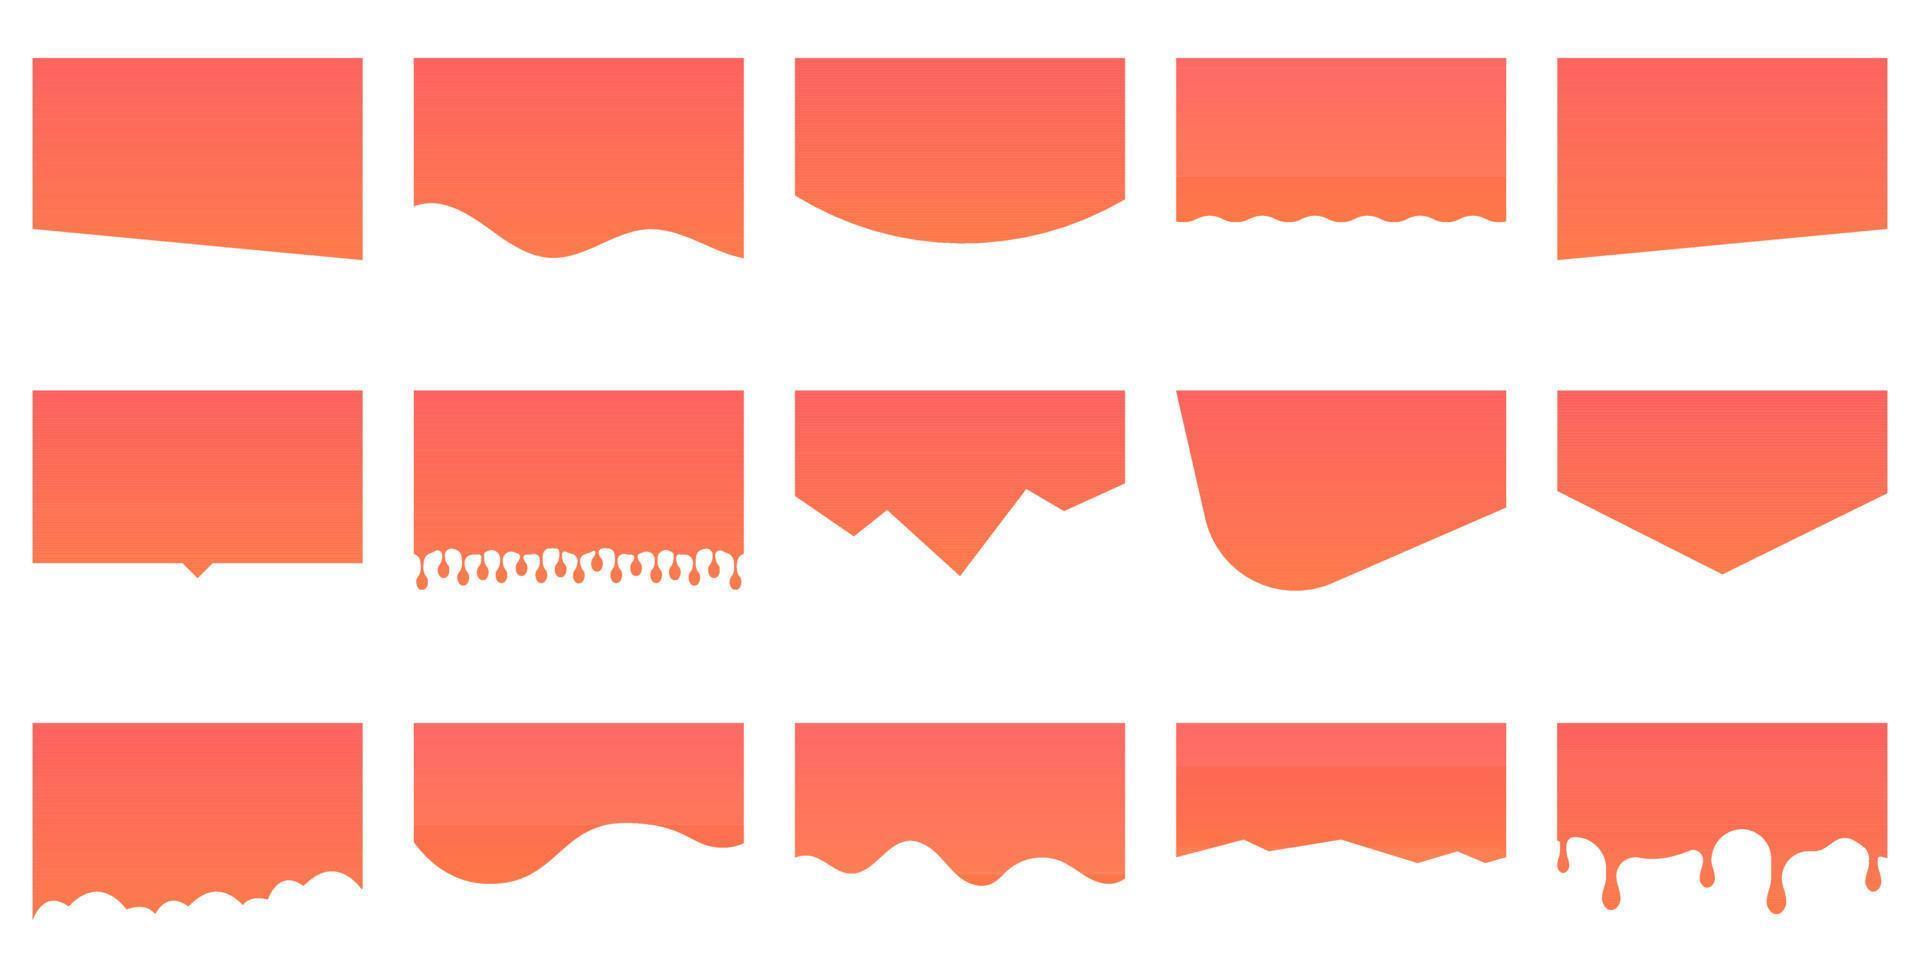 reeks van verdelers vormen voor website. kromme oranje lijnen, druppels, Golf verzameling van abstract ontwerp element voor bovenkant, bodem bladzijde web plaats. geïsoleerd vector illustratie.